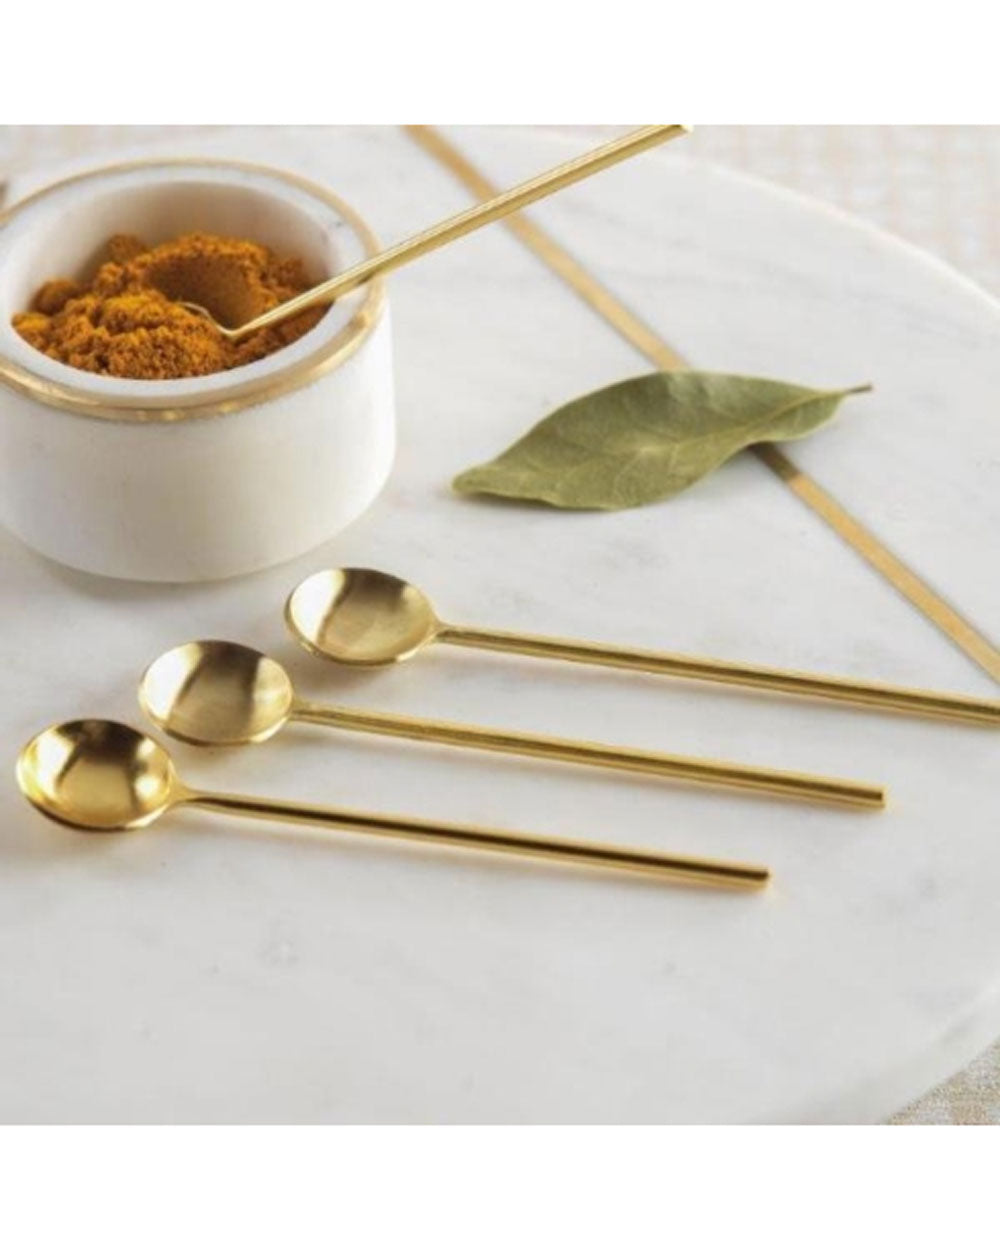 Maroc Small Teaspoon Set